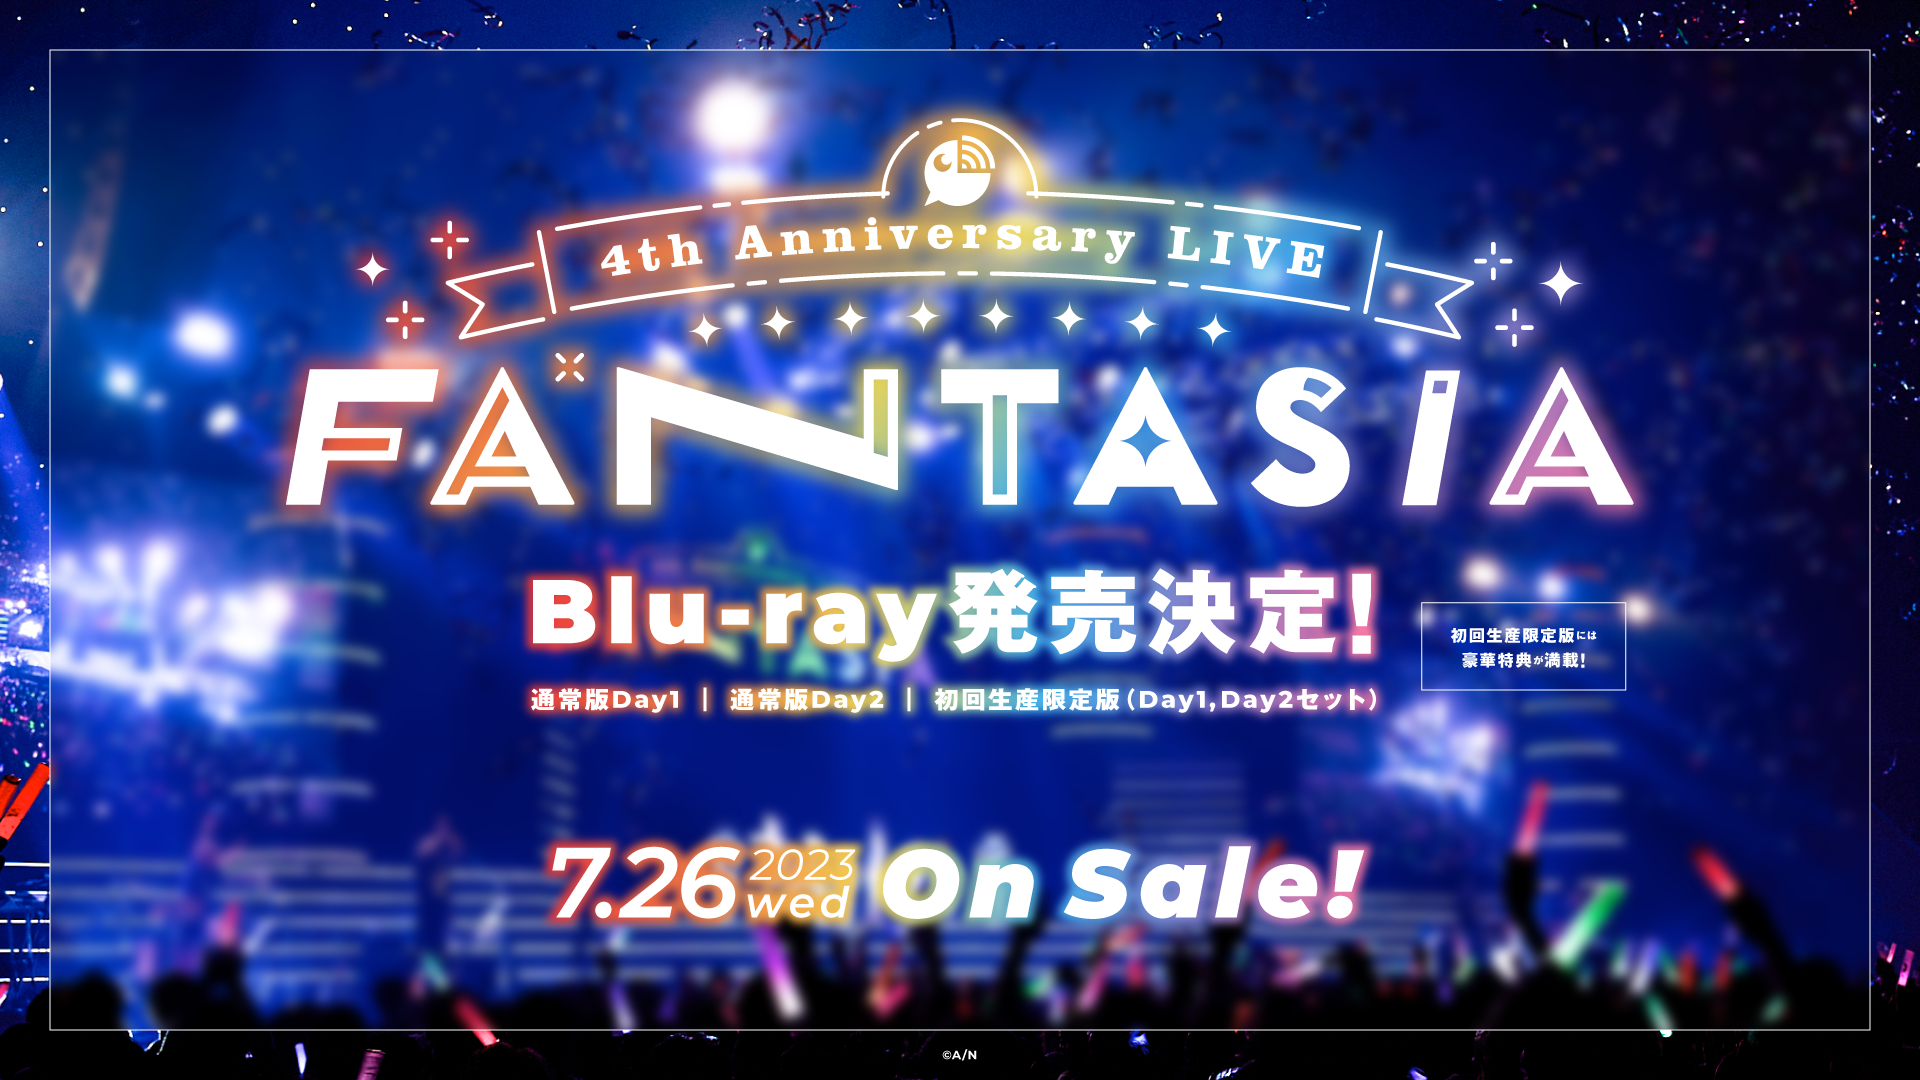 にじさんじ 4th Anniversary LIVE『FANTASIA』Blu-ray